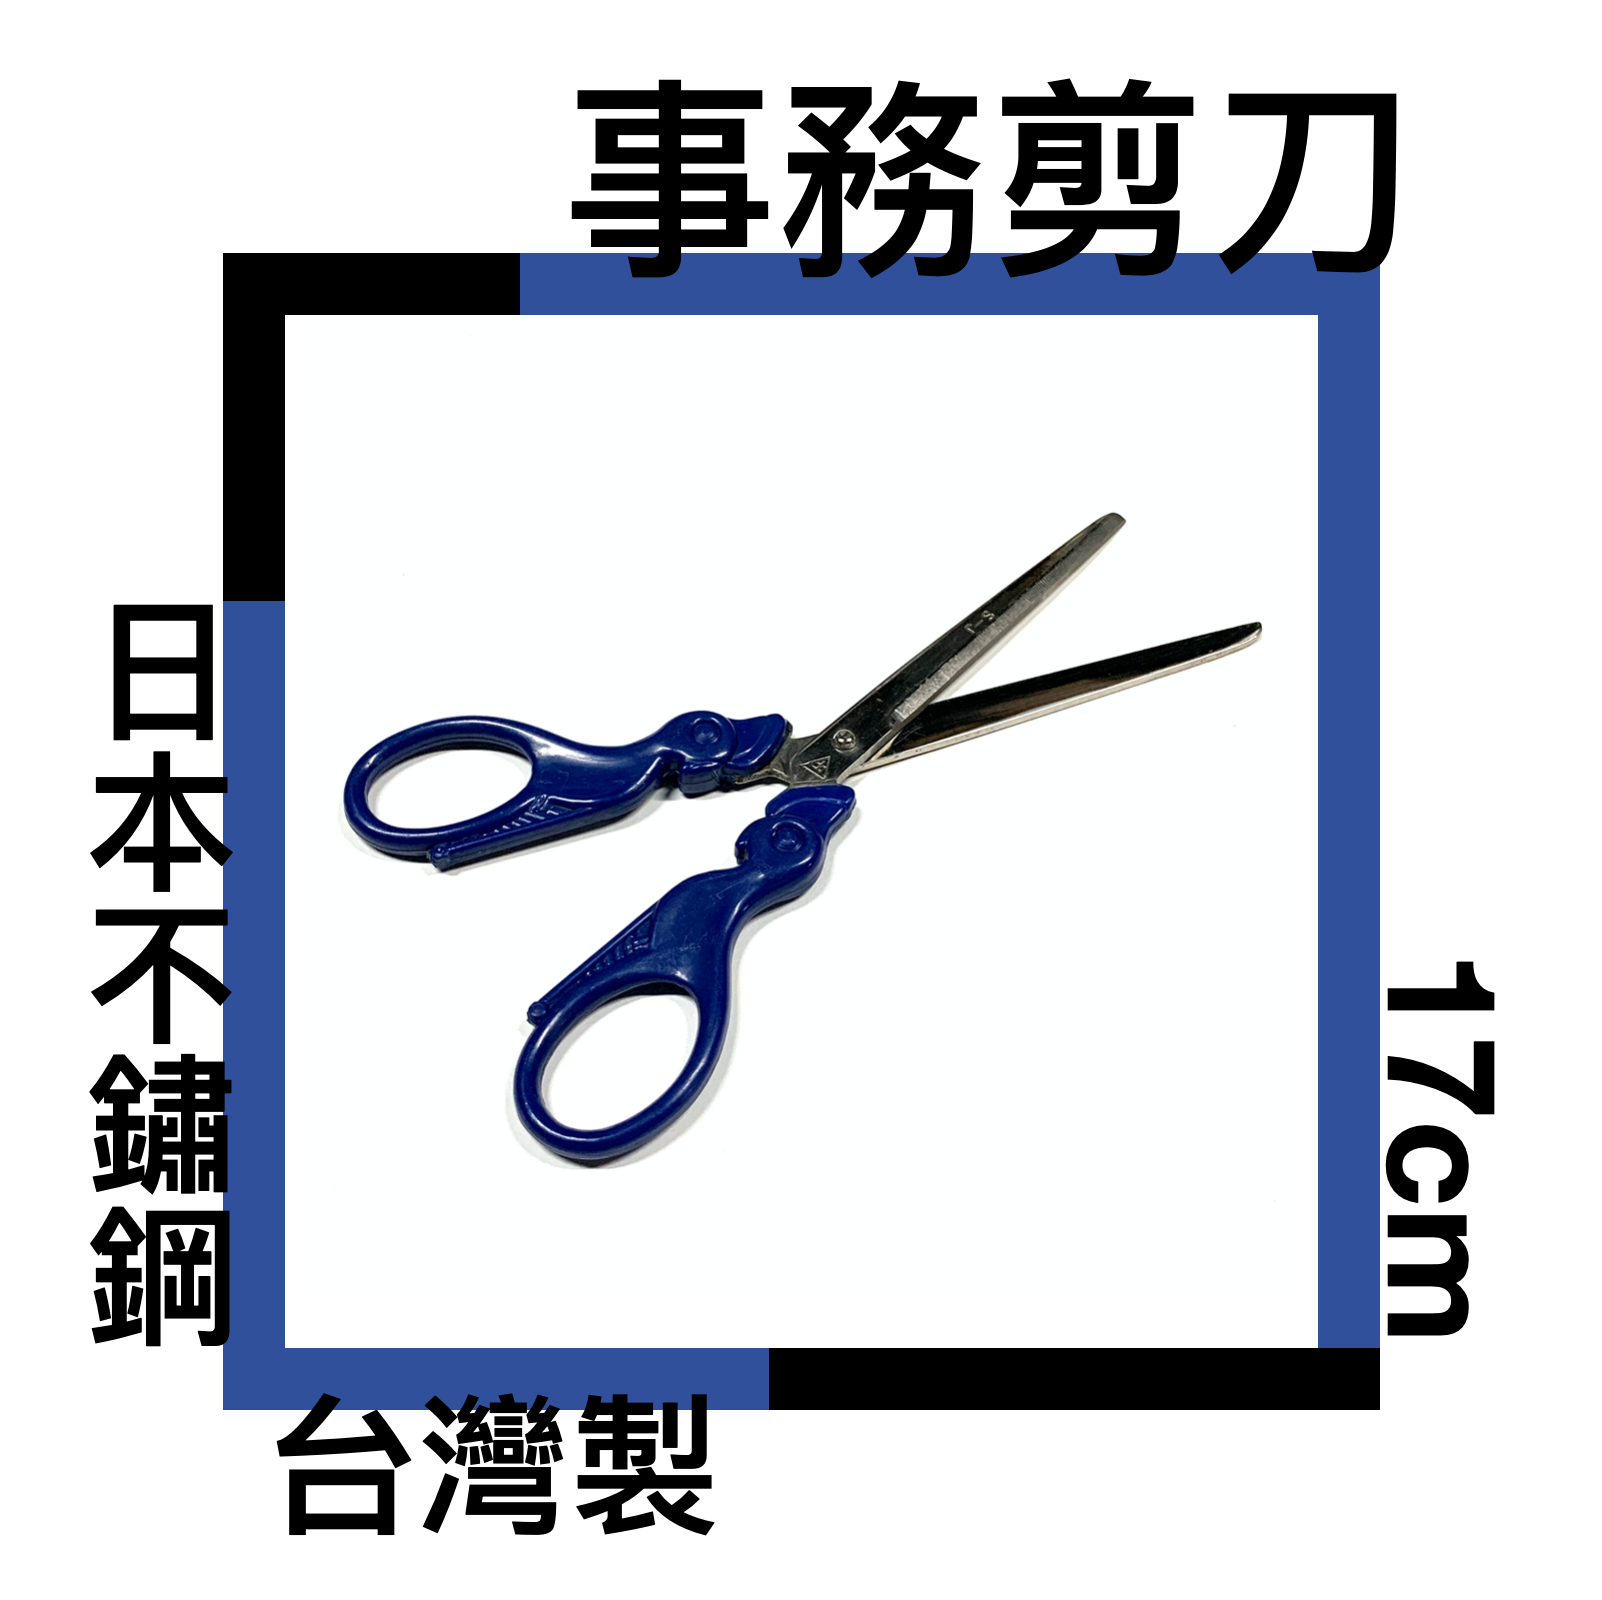 ■川鈺■ 剪刀 事務剪 餐用剪 台灣製 17cm 餐用剪 多功能剪刀 黑白二色可選 *1入